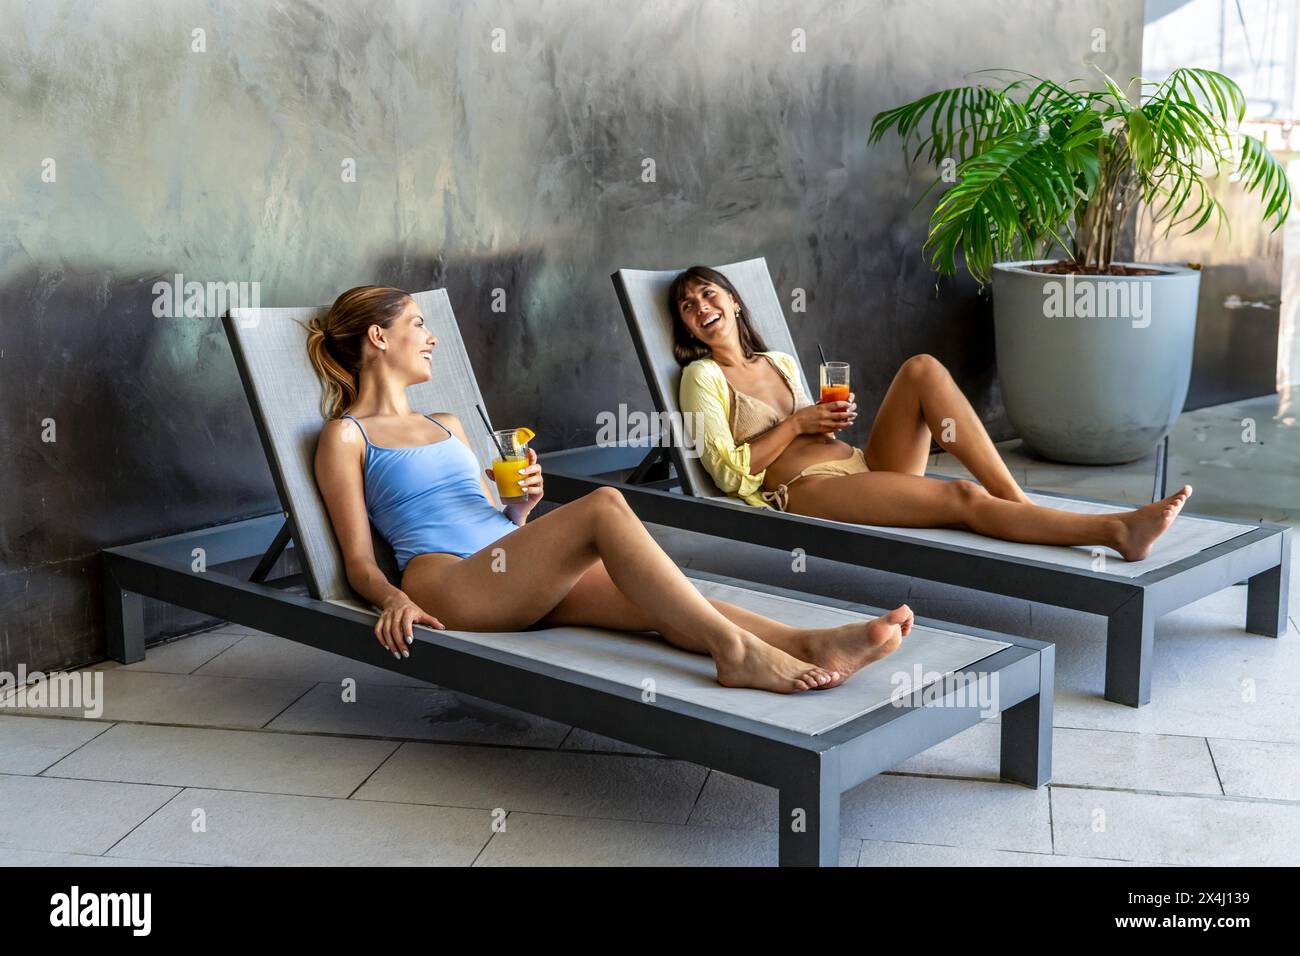 Deux amies rient et boivent du jus dans la piscine d'un hôtel chic Banque D'Images